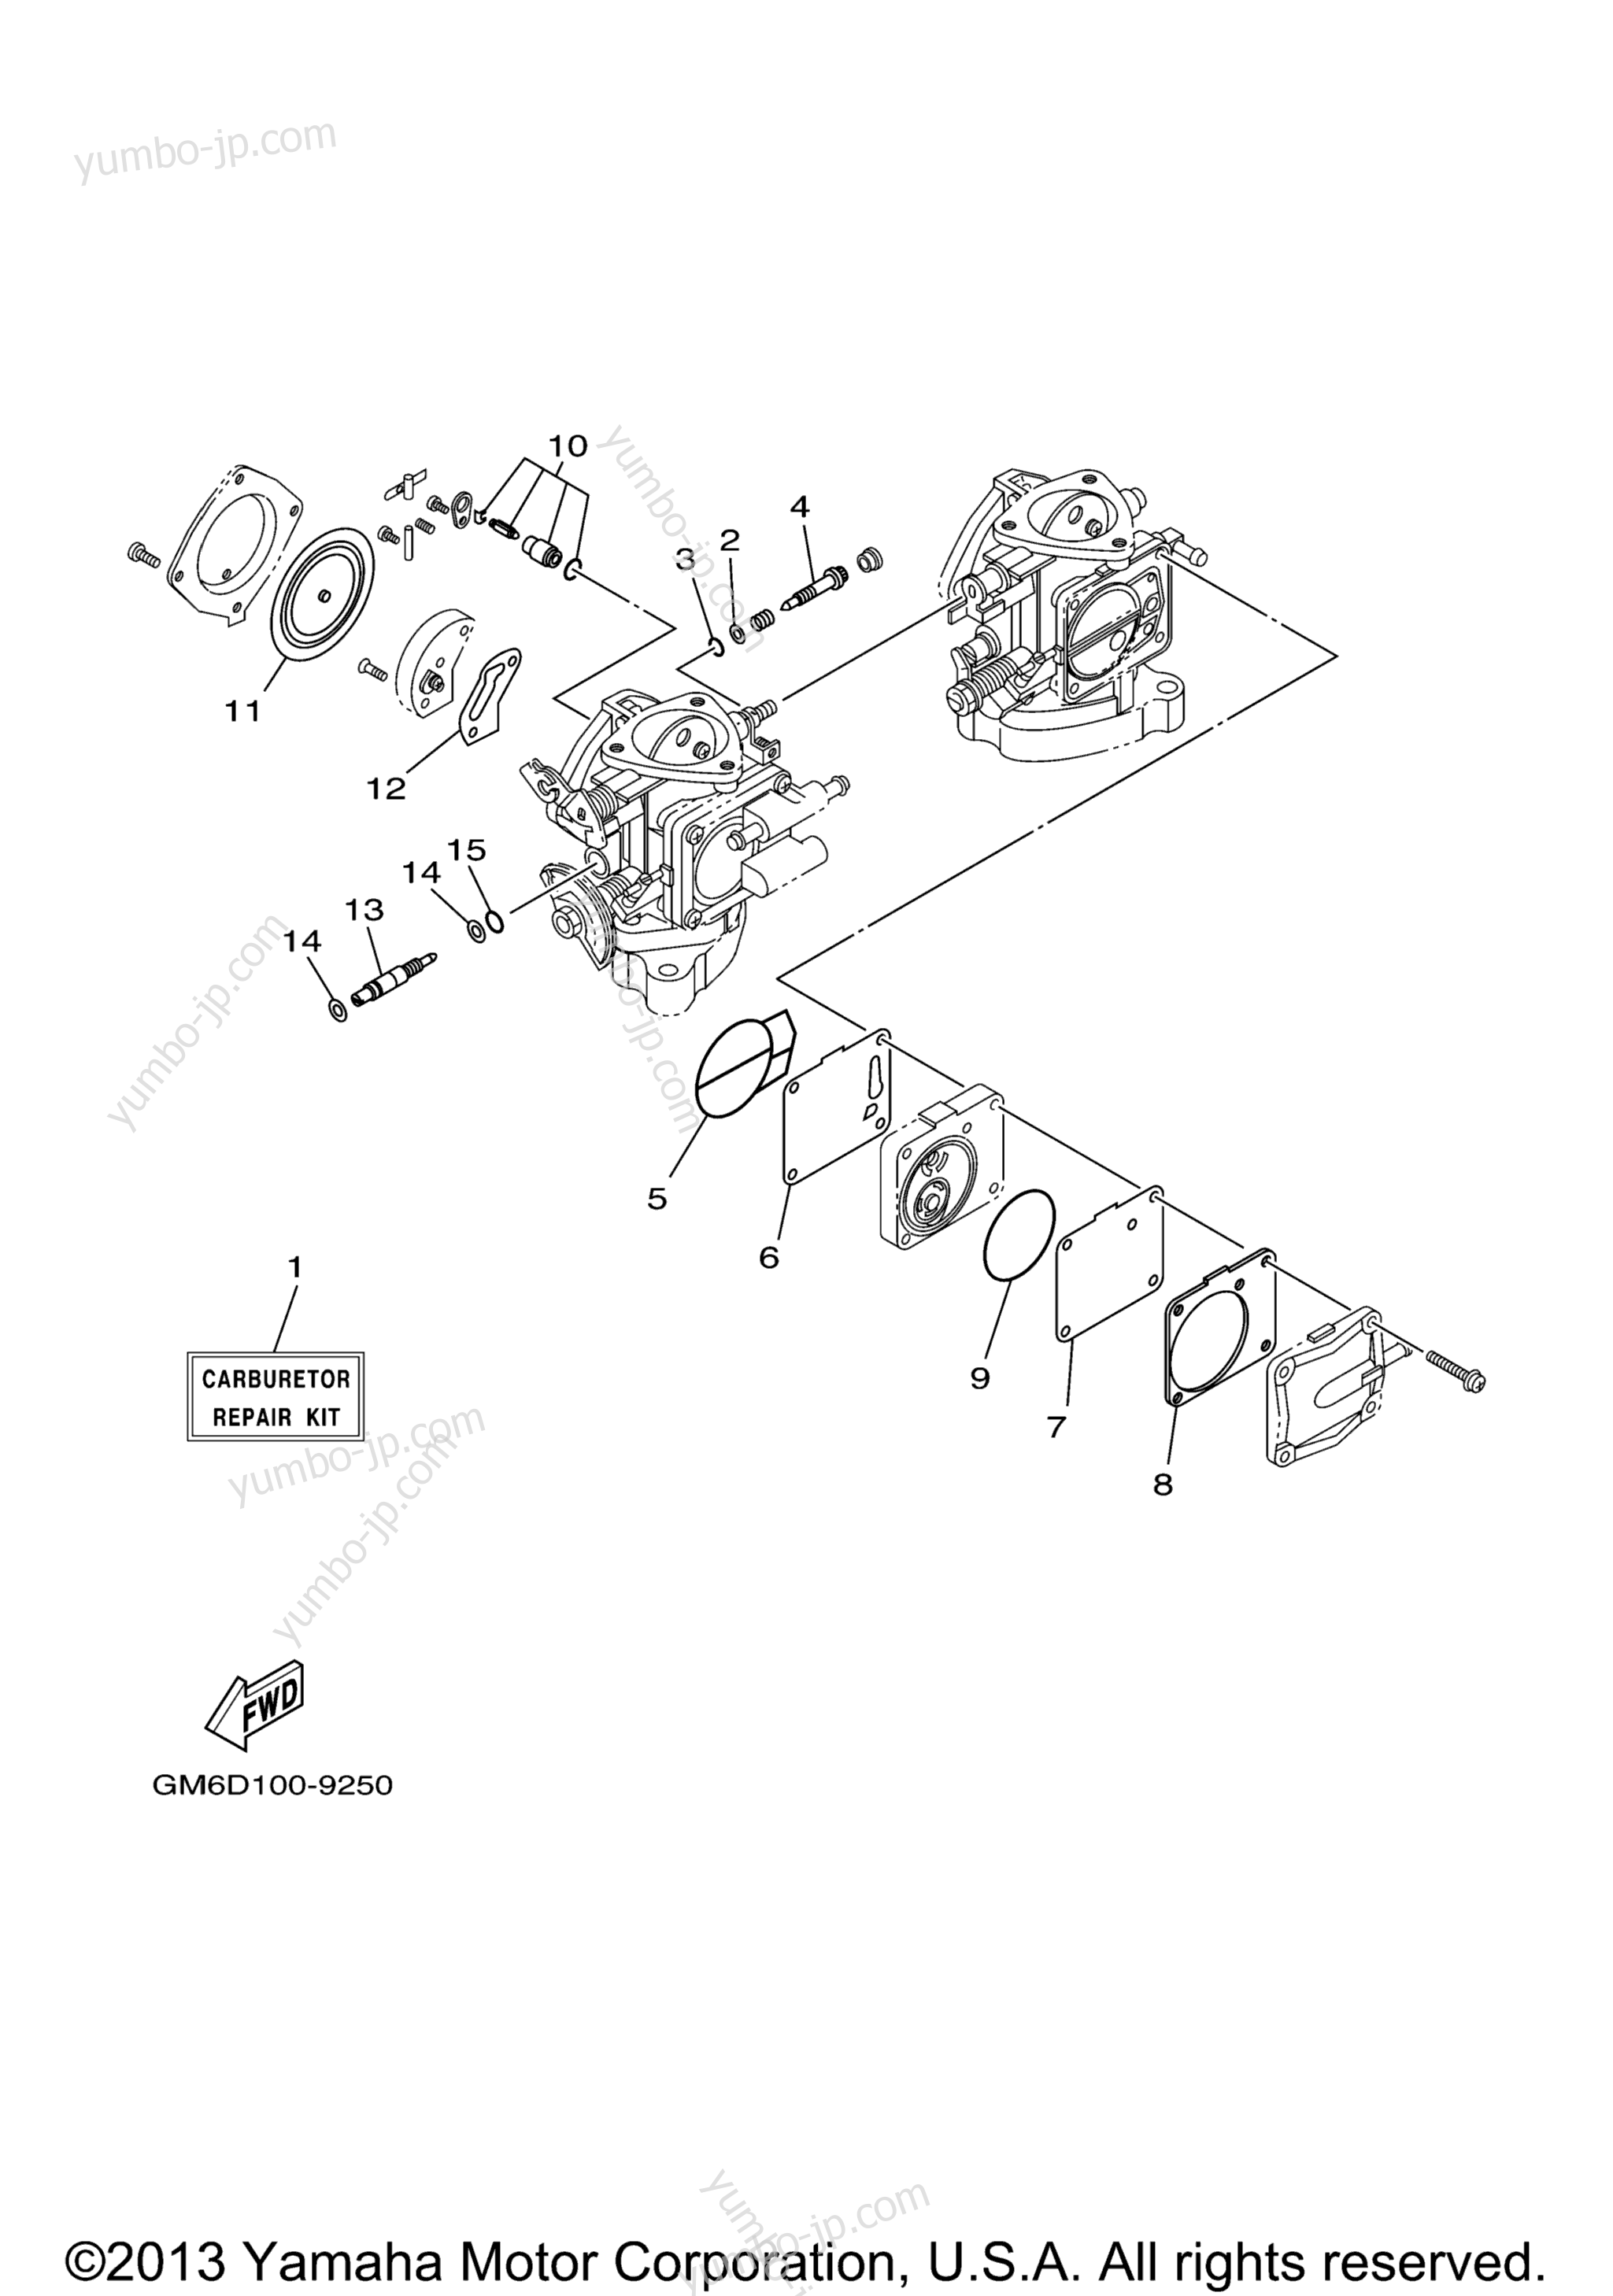 Repair Kit 2 для гидроциклов YAMAHA XL700 (XL700B) 2003 г.